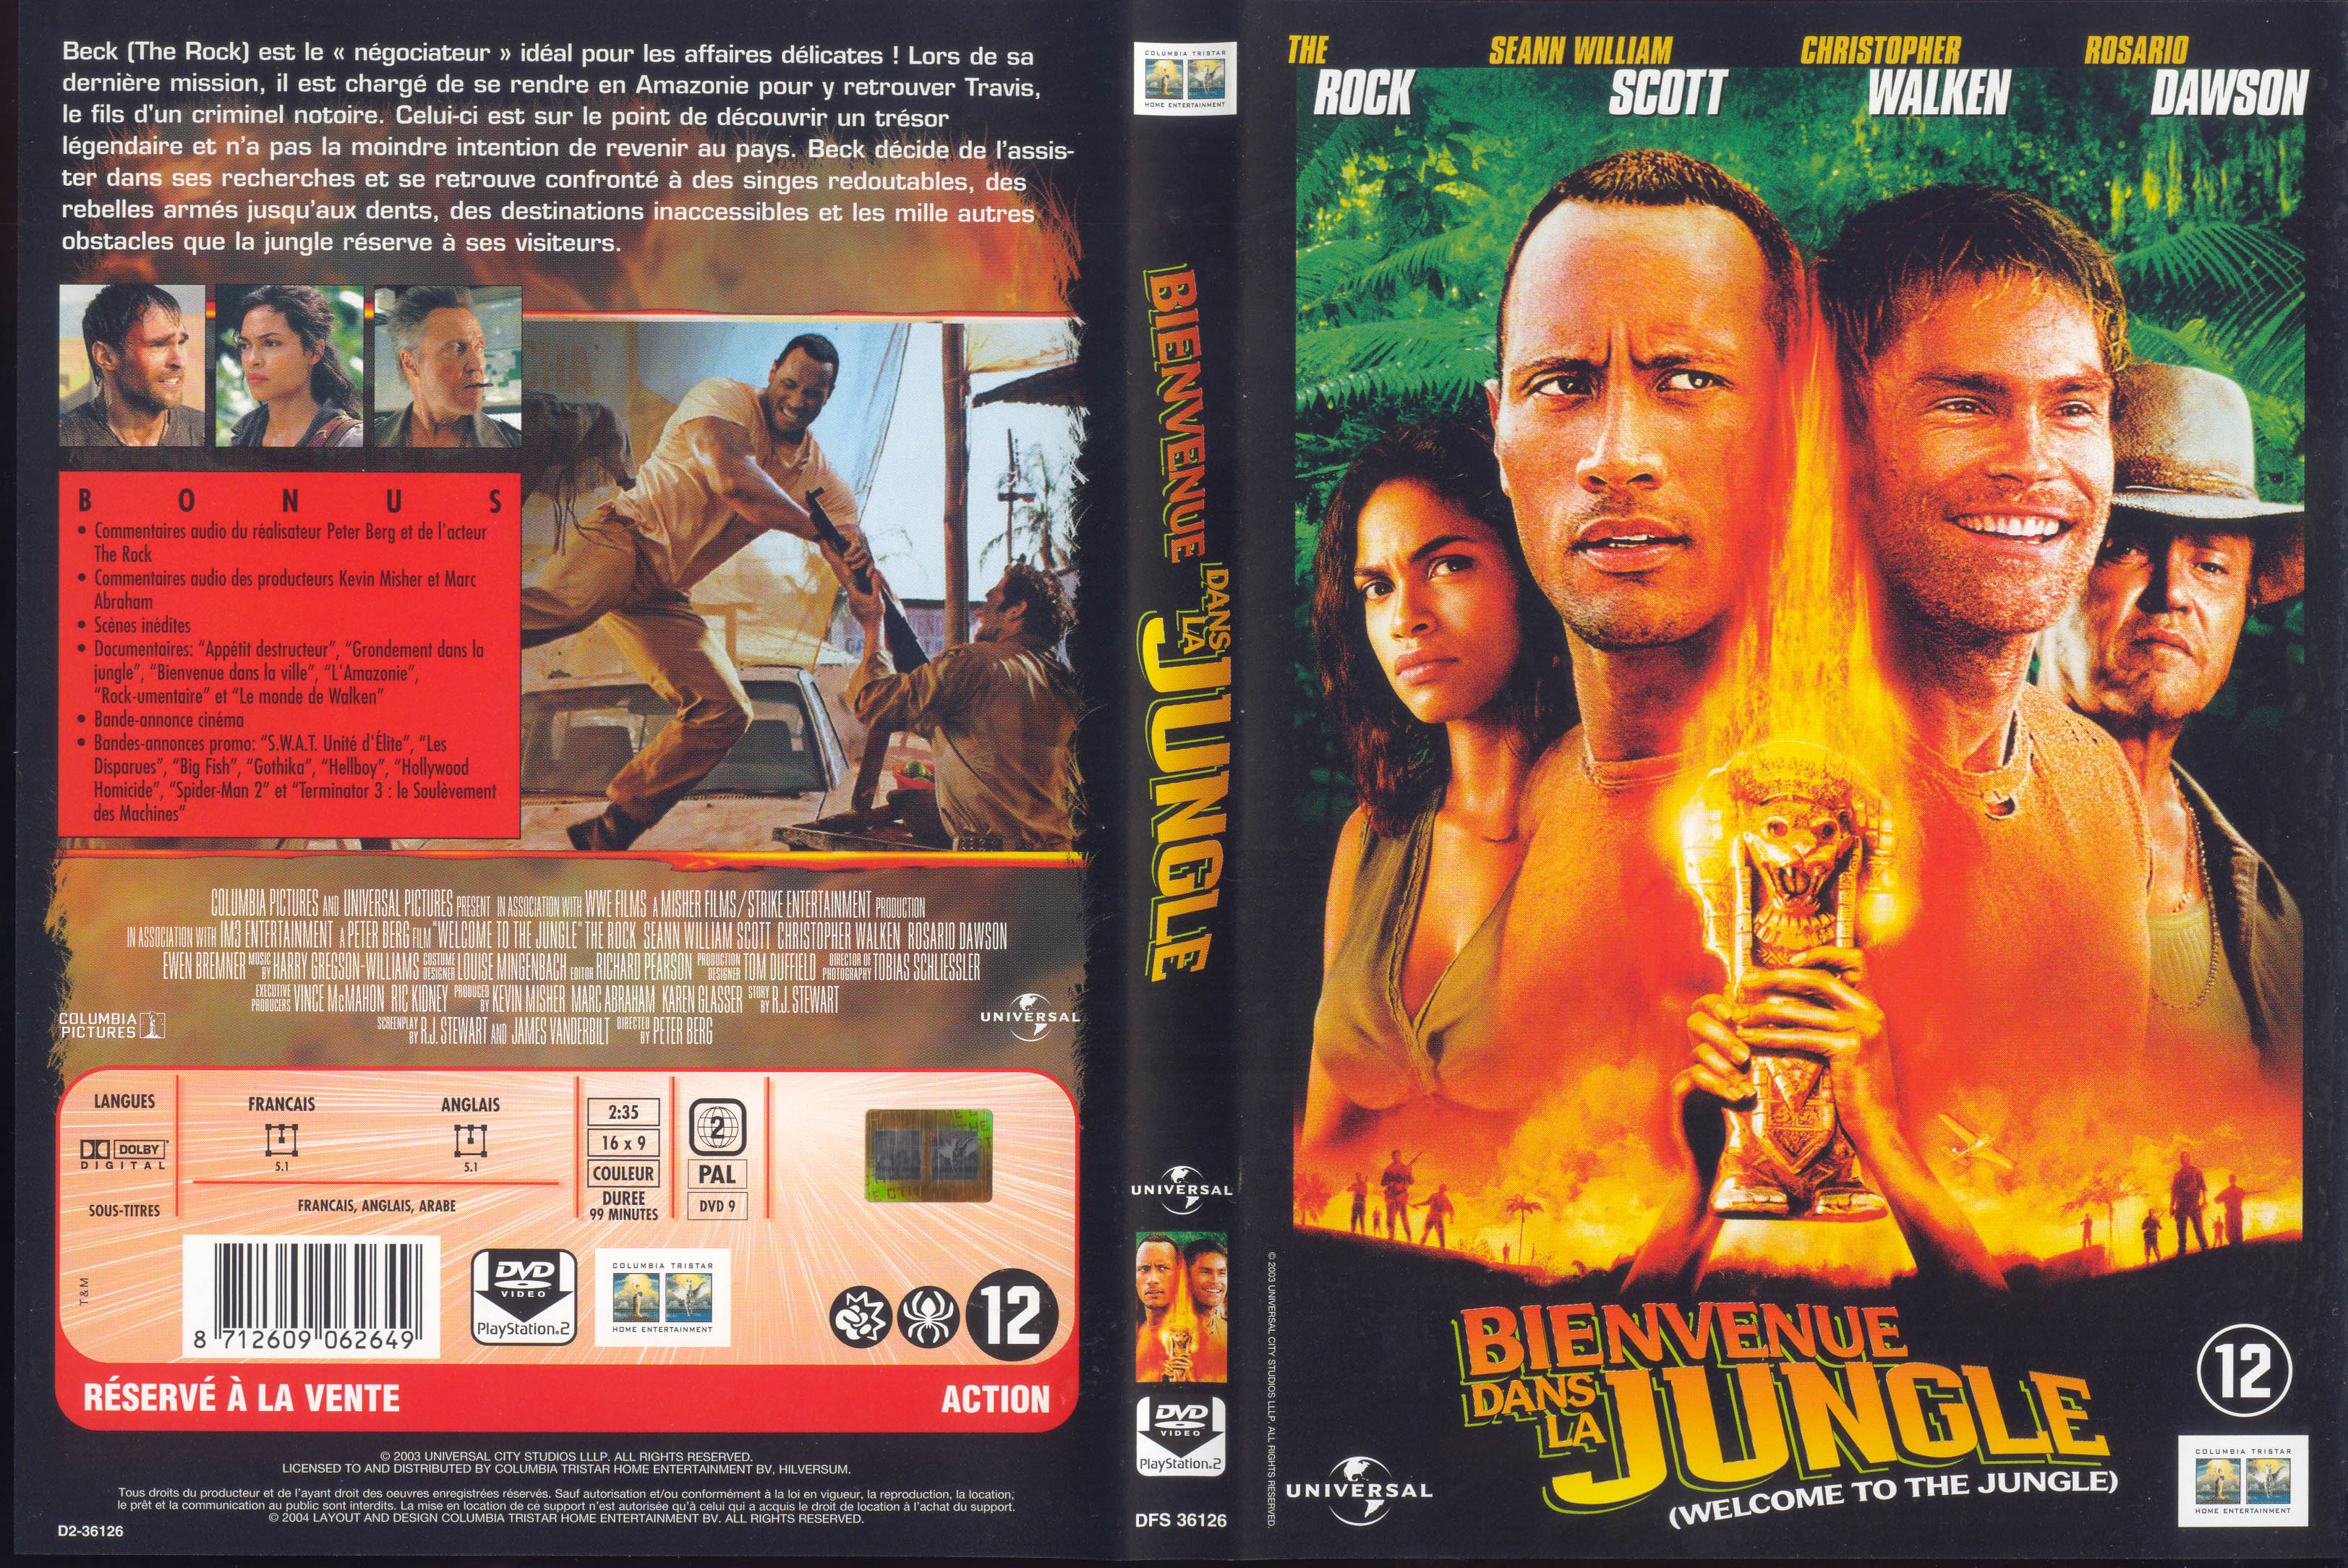 Jaquette DVD Bienvenue dans la jungle v2